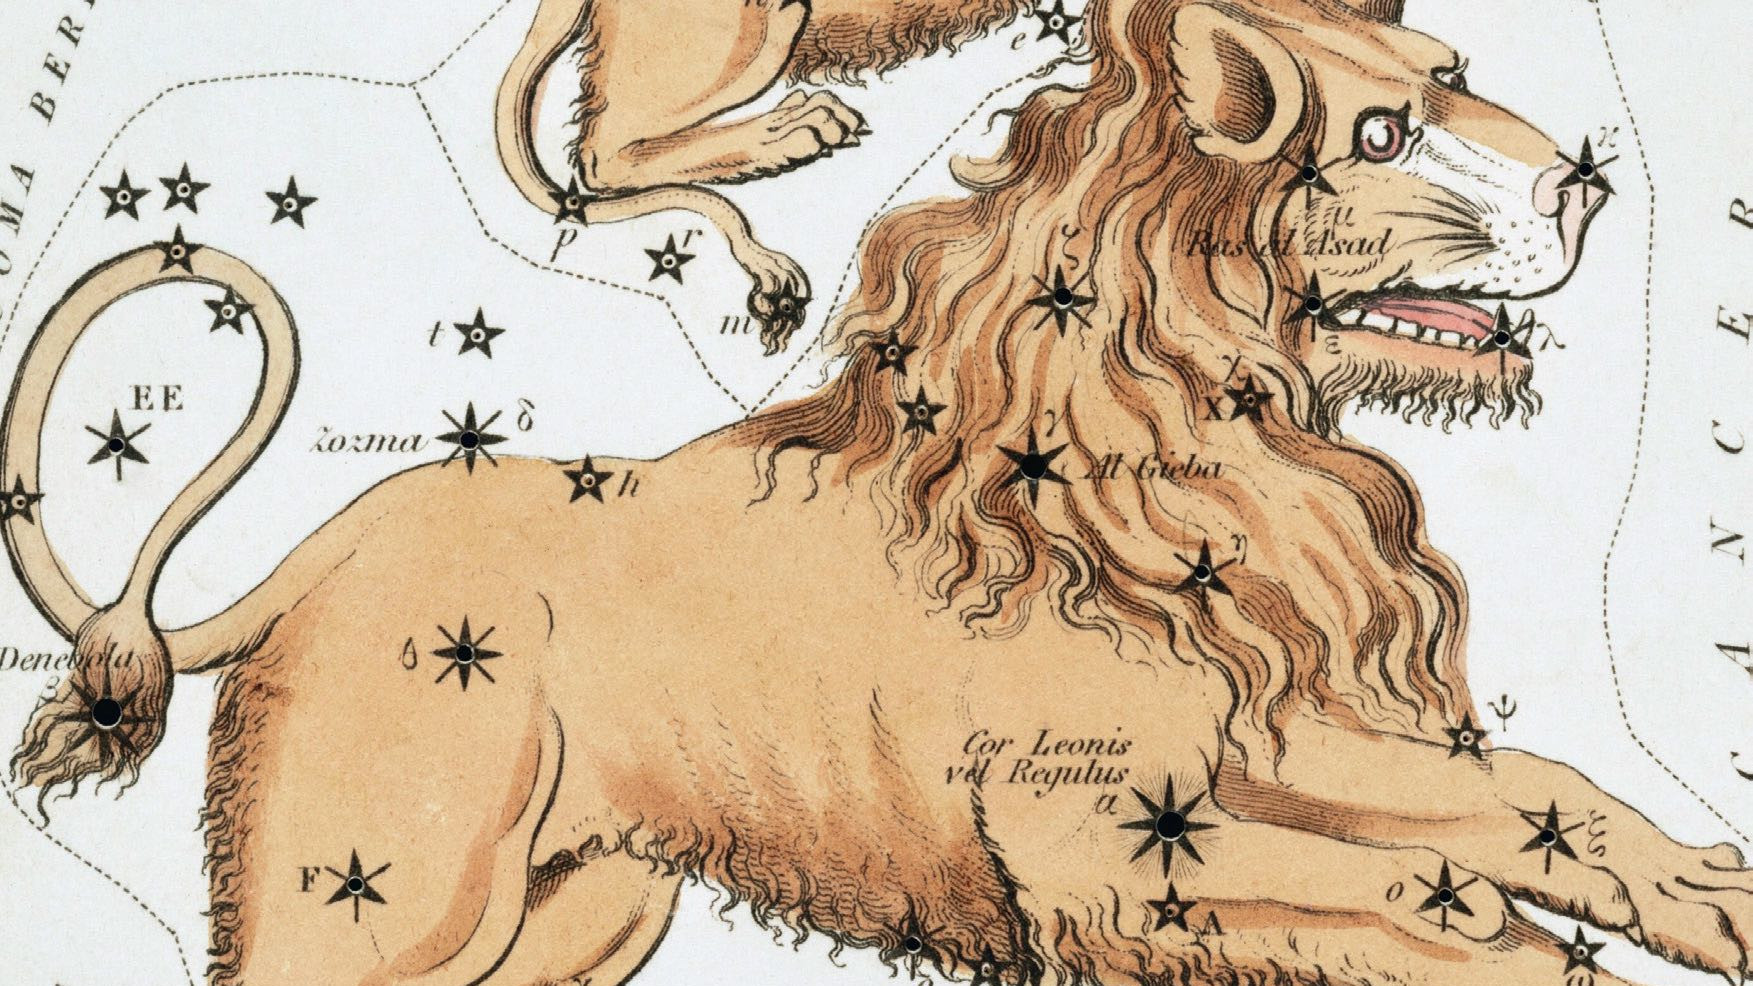 Podczas, gdy obecnie widzimy w tym gwiazdozbiorze kształt żelazka, tysiące lat temu obserwatorzy nieba wyobrażali sobie go jako przyczajonego lwa, którego serce wyznaczała jasna gwiazda Regulus.